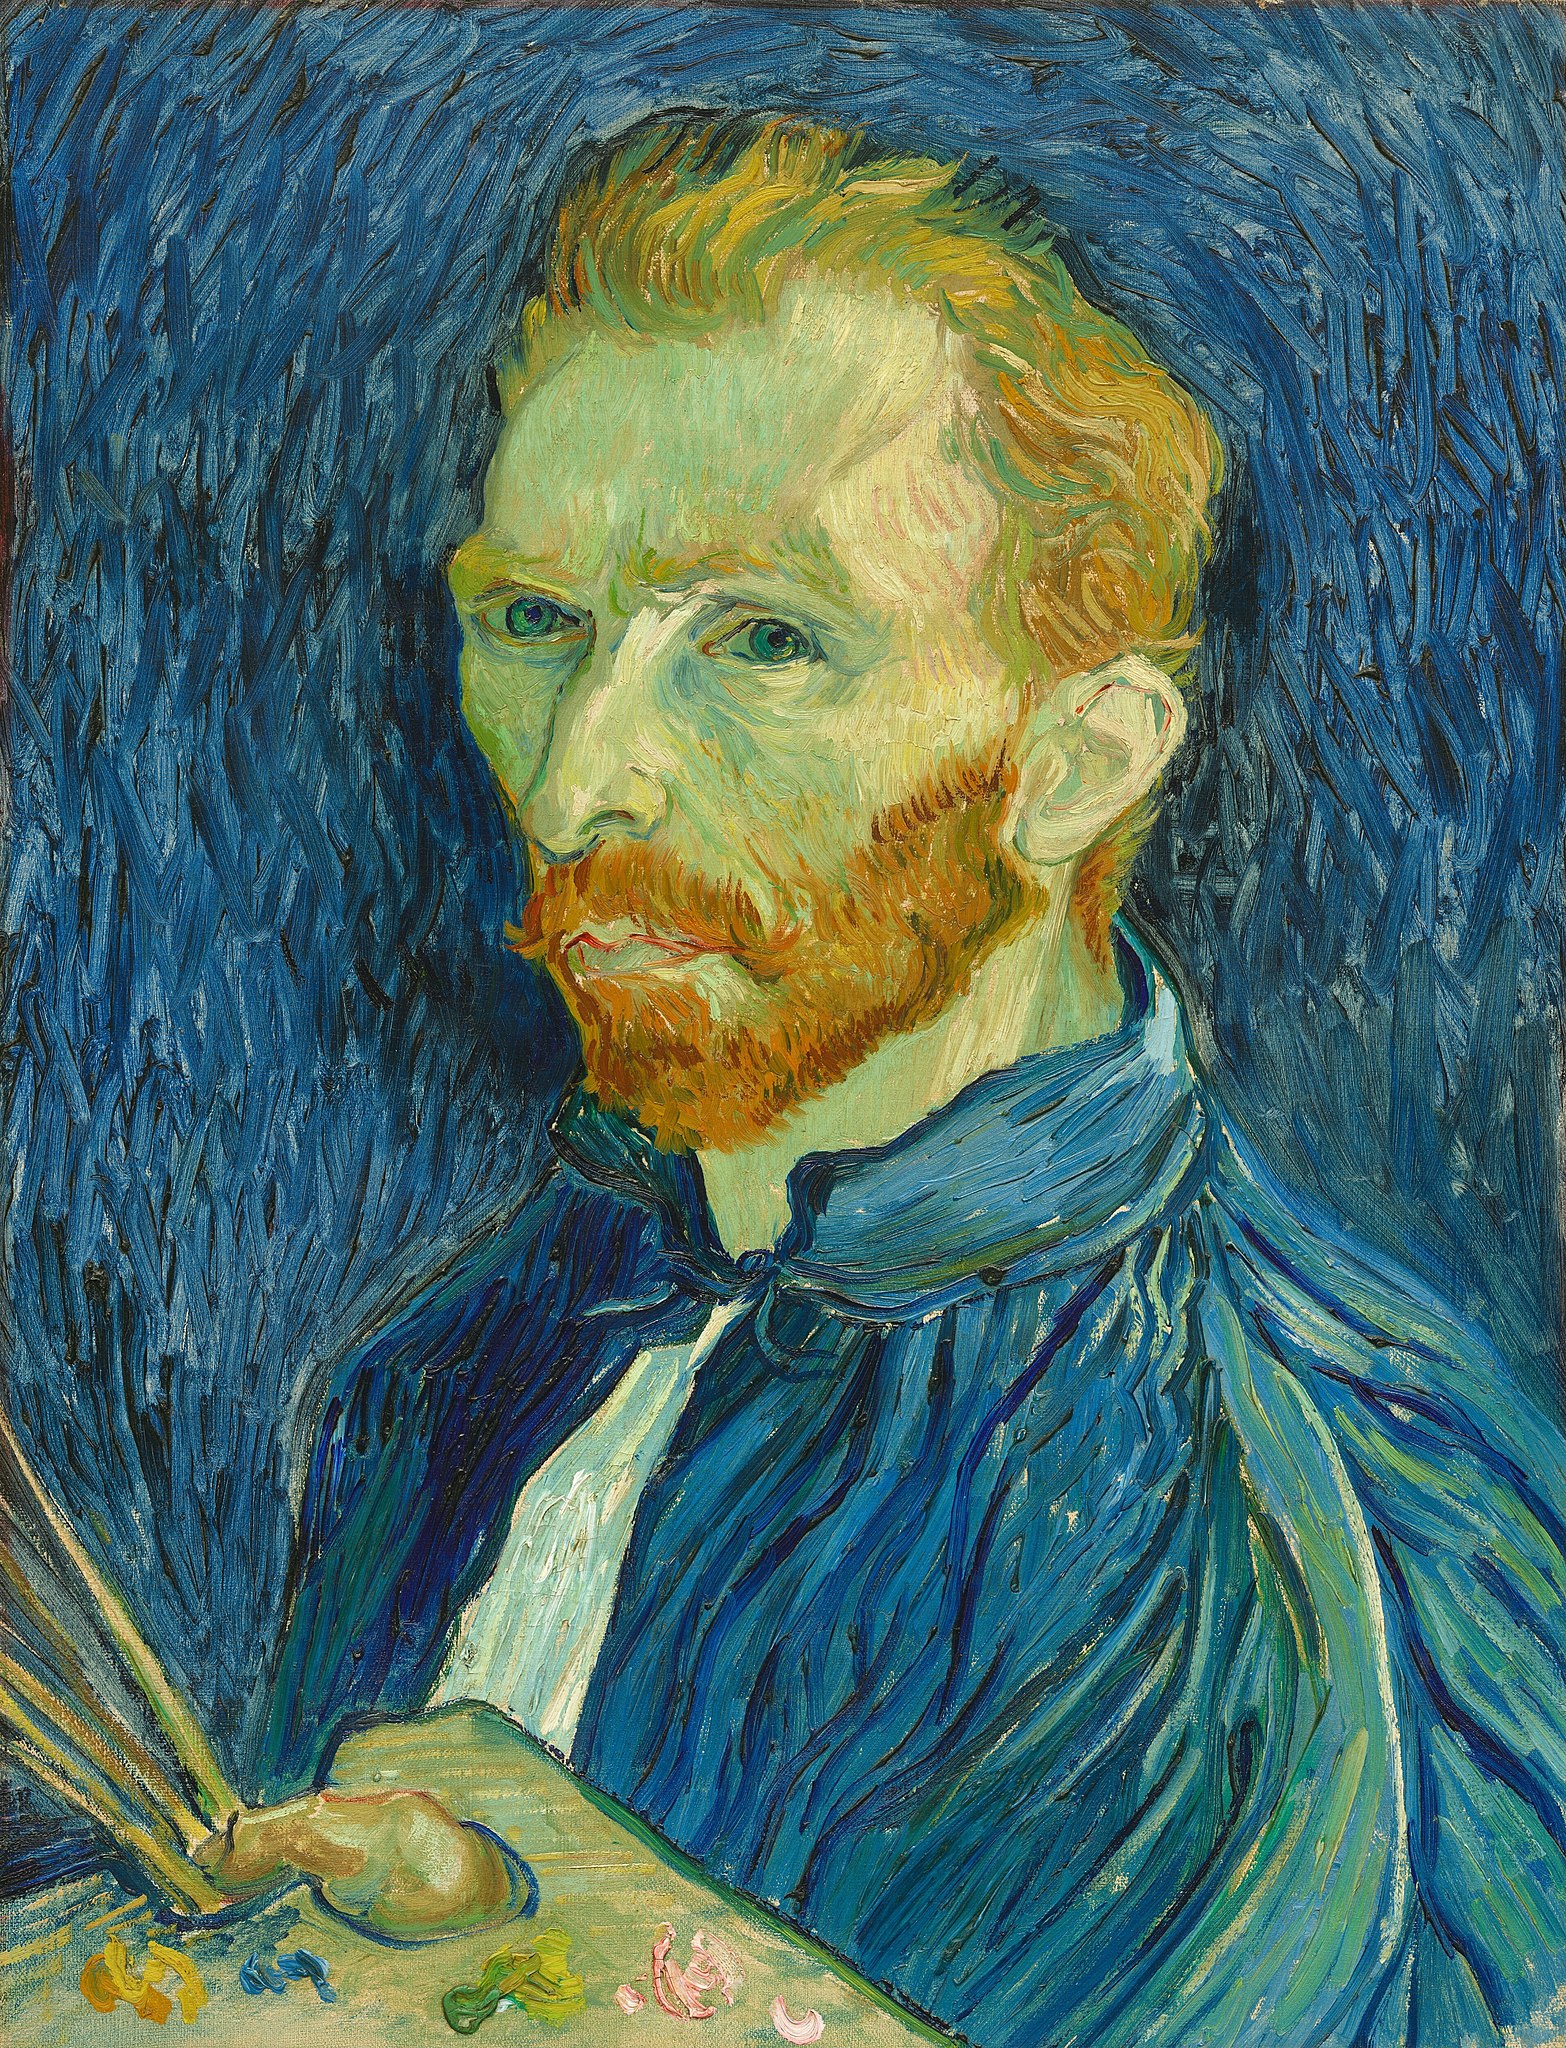 Otoportre (orig. "Self-Portrait") by Vincent van Gogh - 1889 - 43.8 x 57.1 cm 